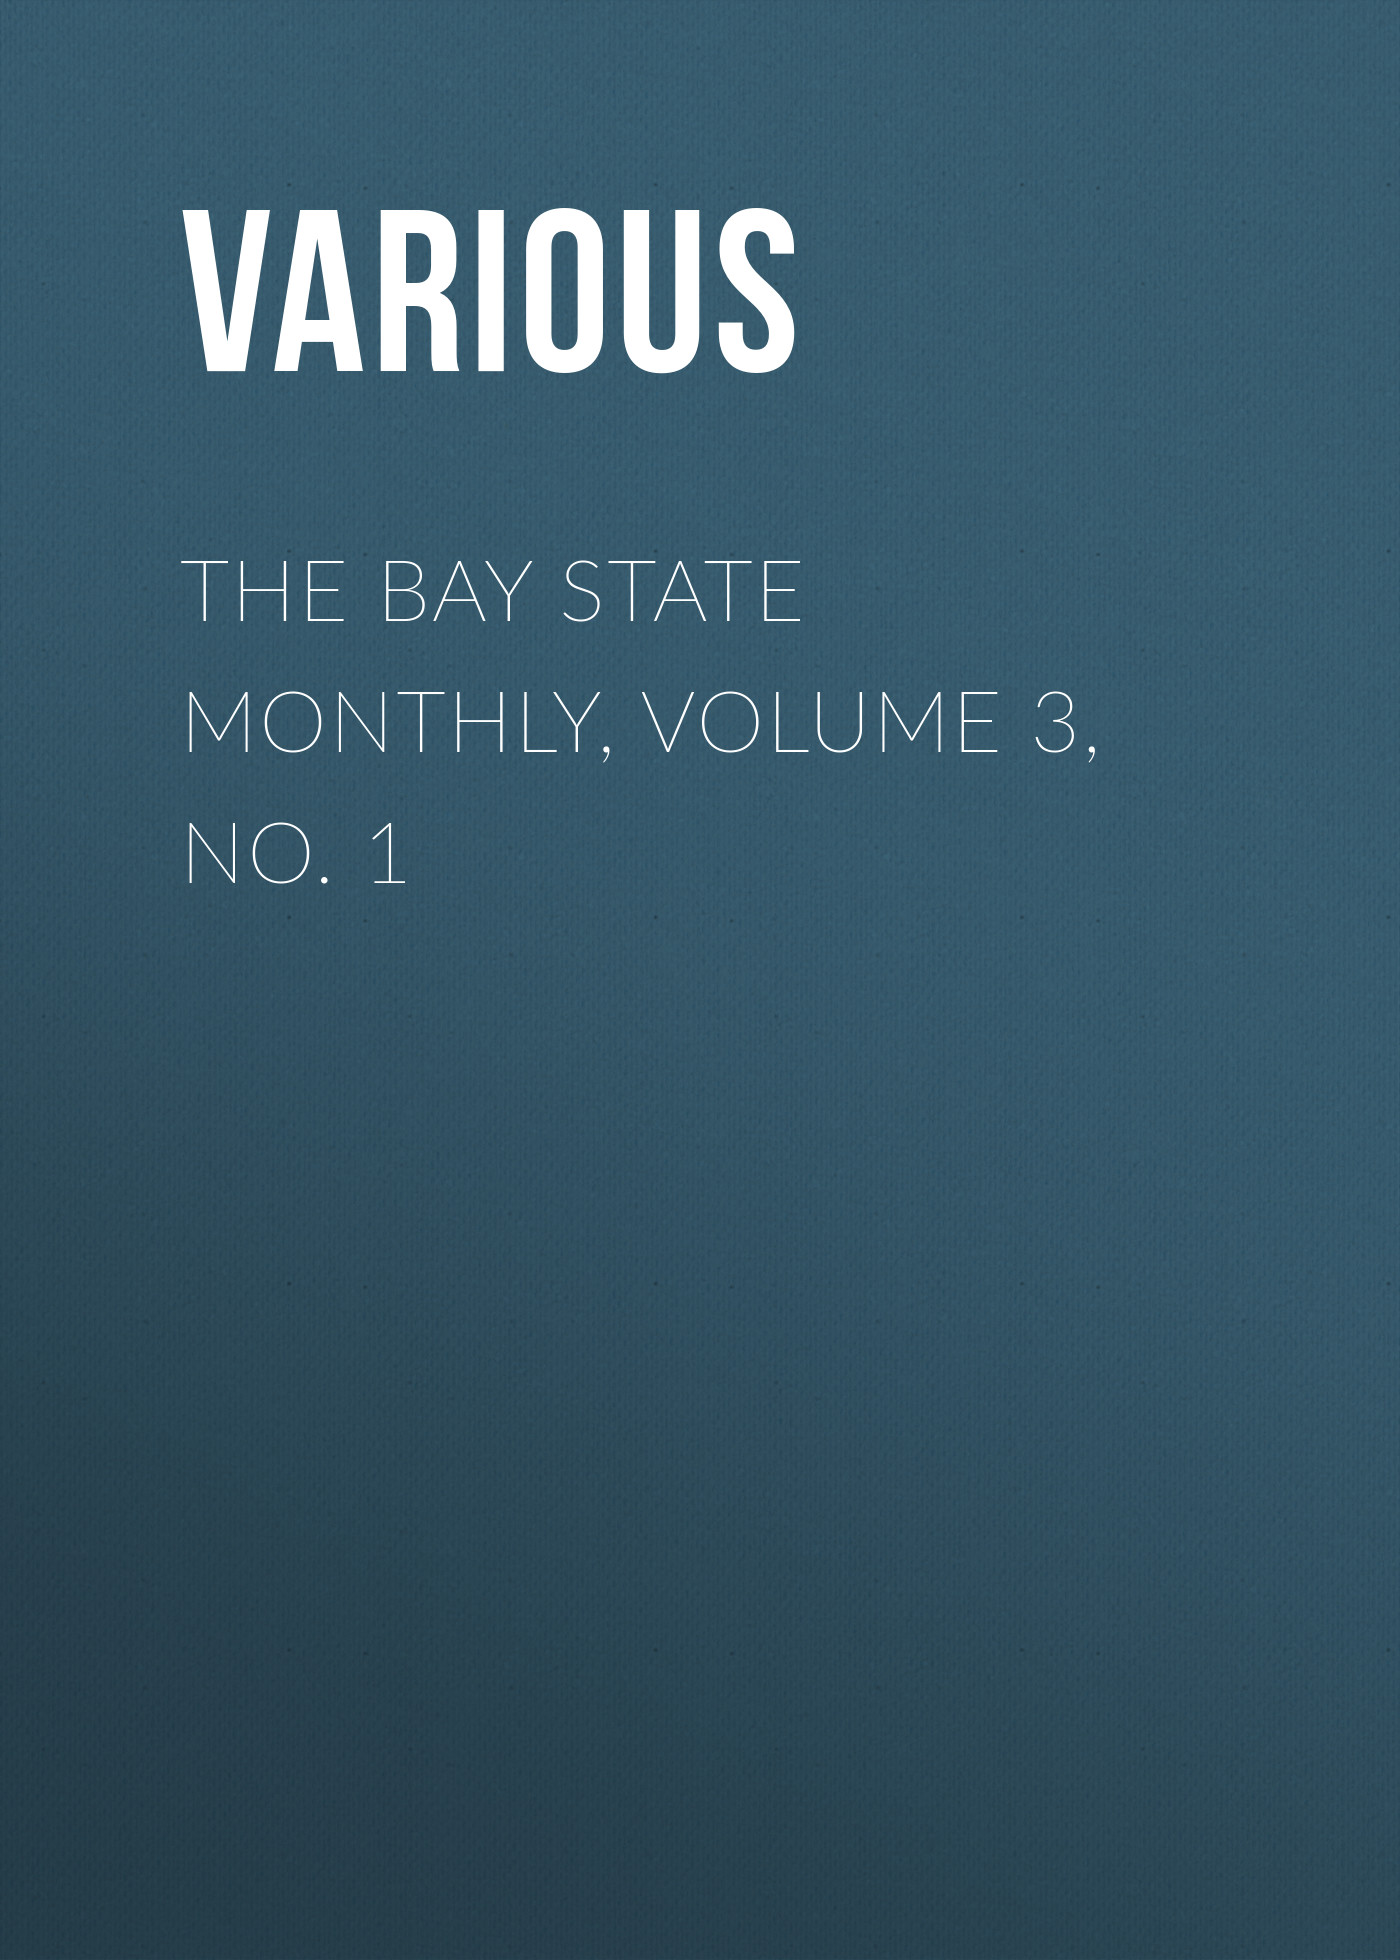 Книга The Bay State Monthly, Volume 3, No. 1 из серии , созданная  Various, может относится к жанру Зарубежная старинная литература, Журналы, Зарубежная образовательная литература. Стоимость электронной книги The Bay State Monthly, Volume 3, No. 1 с идентификатором 35502267 составляет 0 руб.